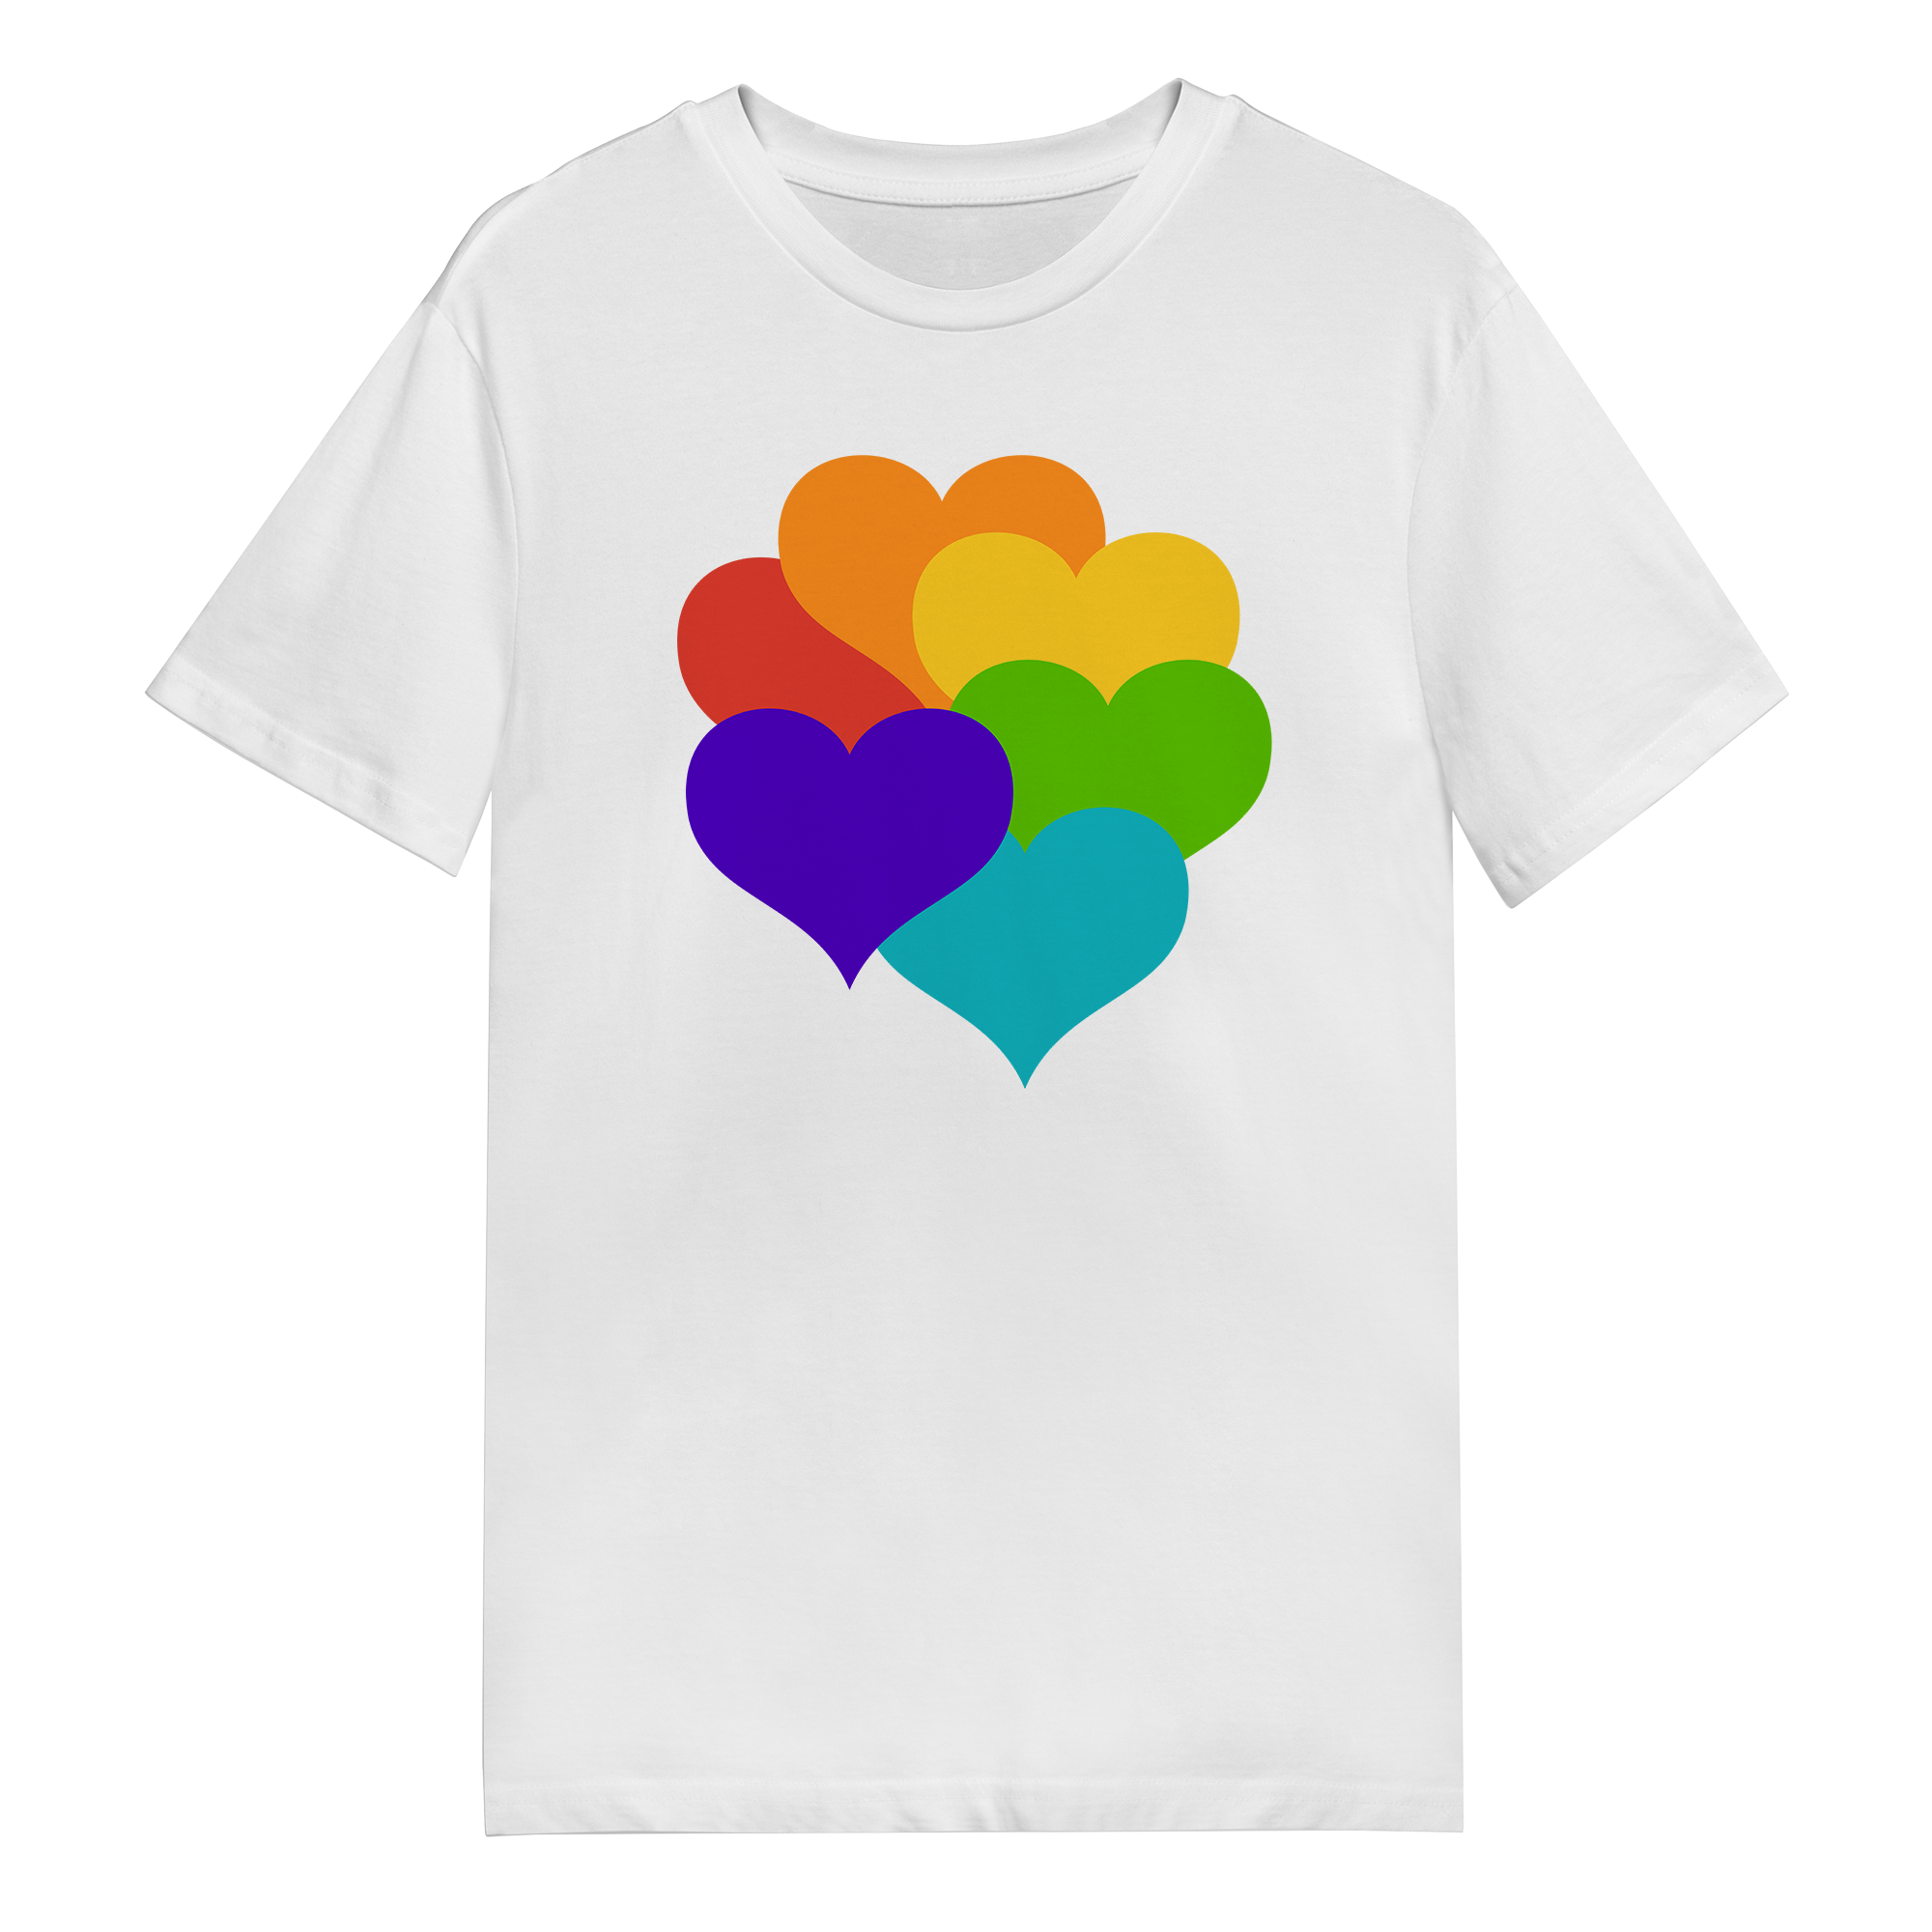 Men's T-Shirt - Rainbow Hearts